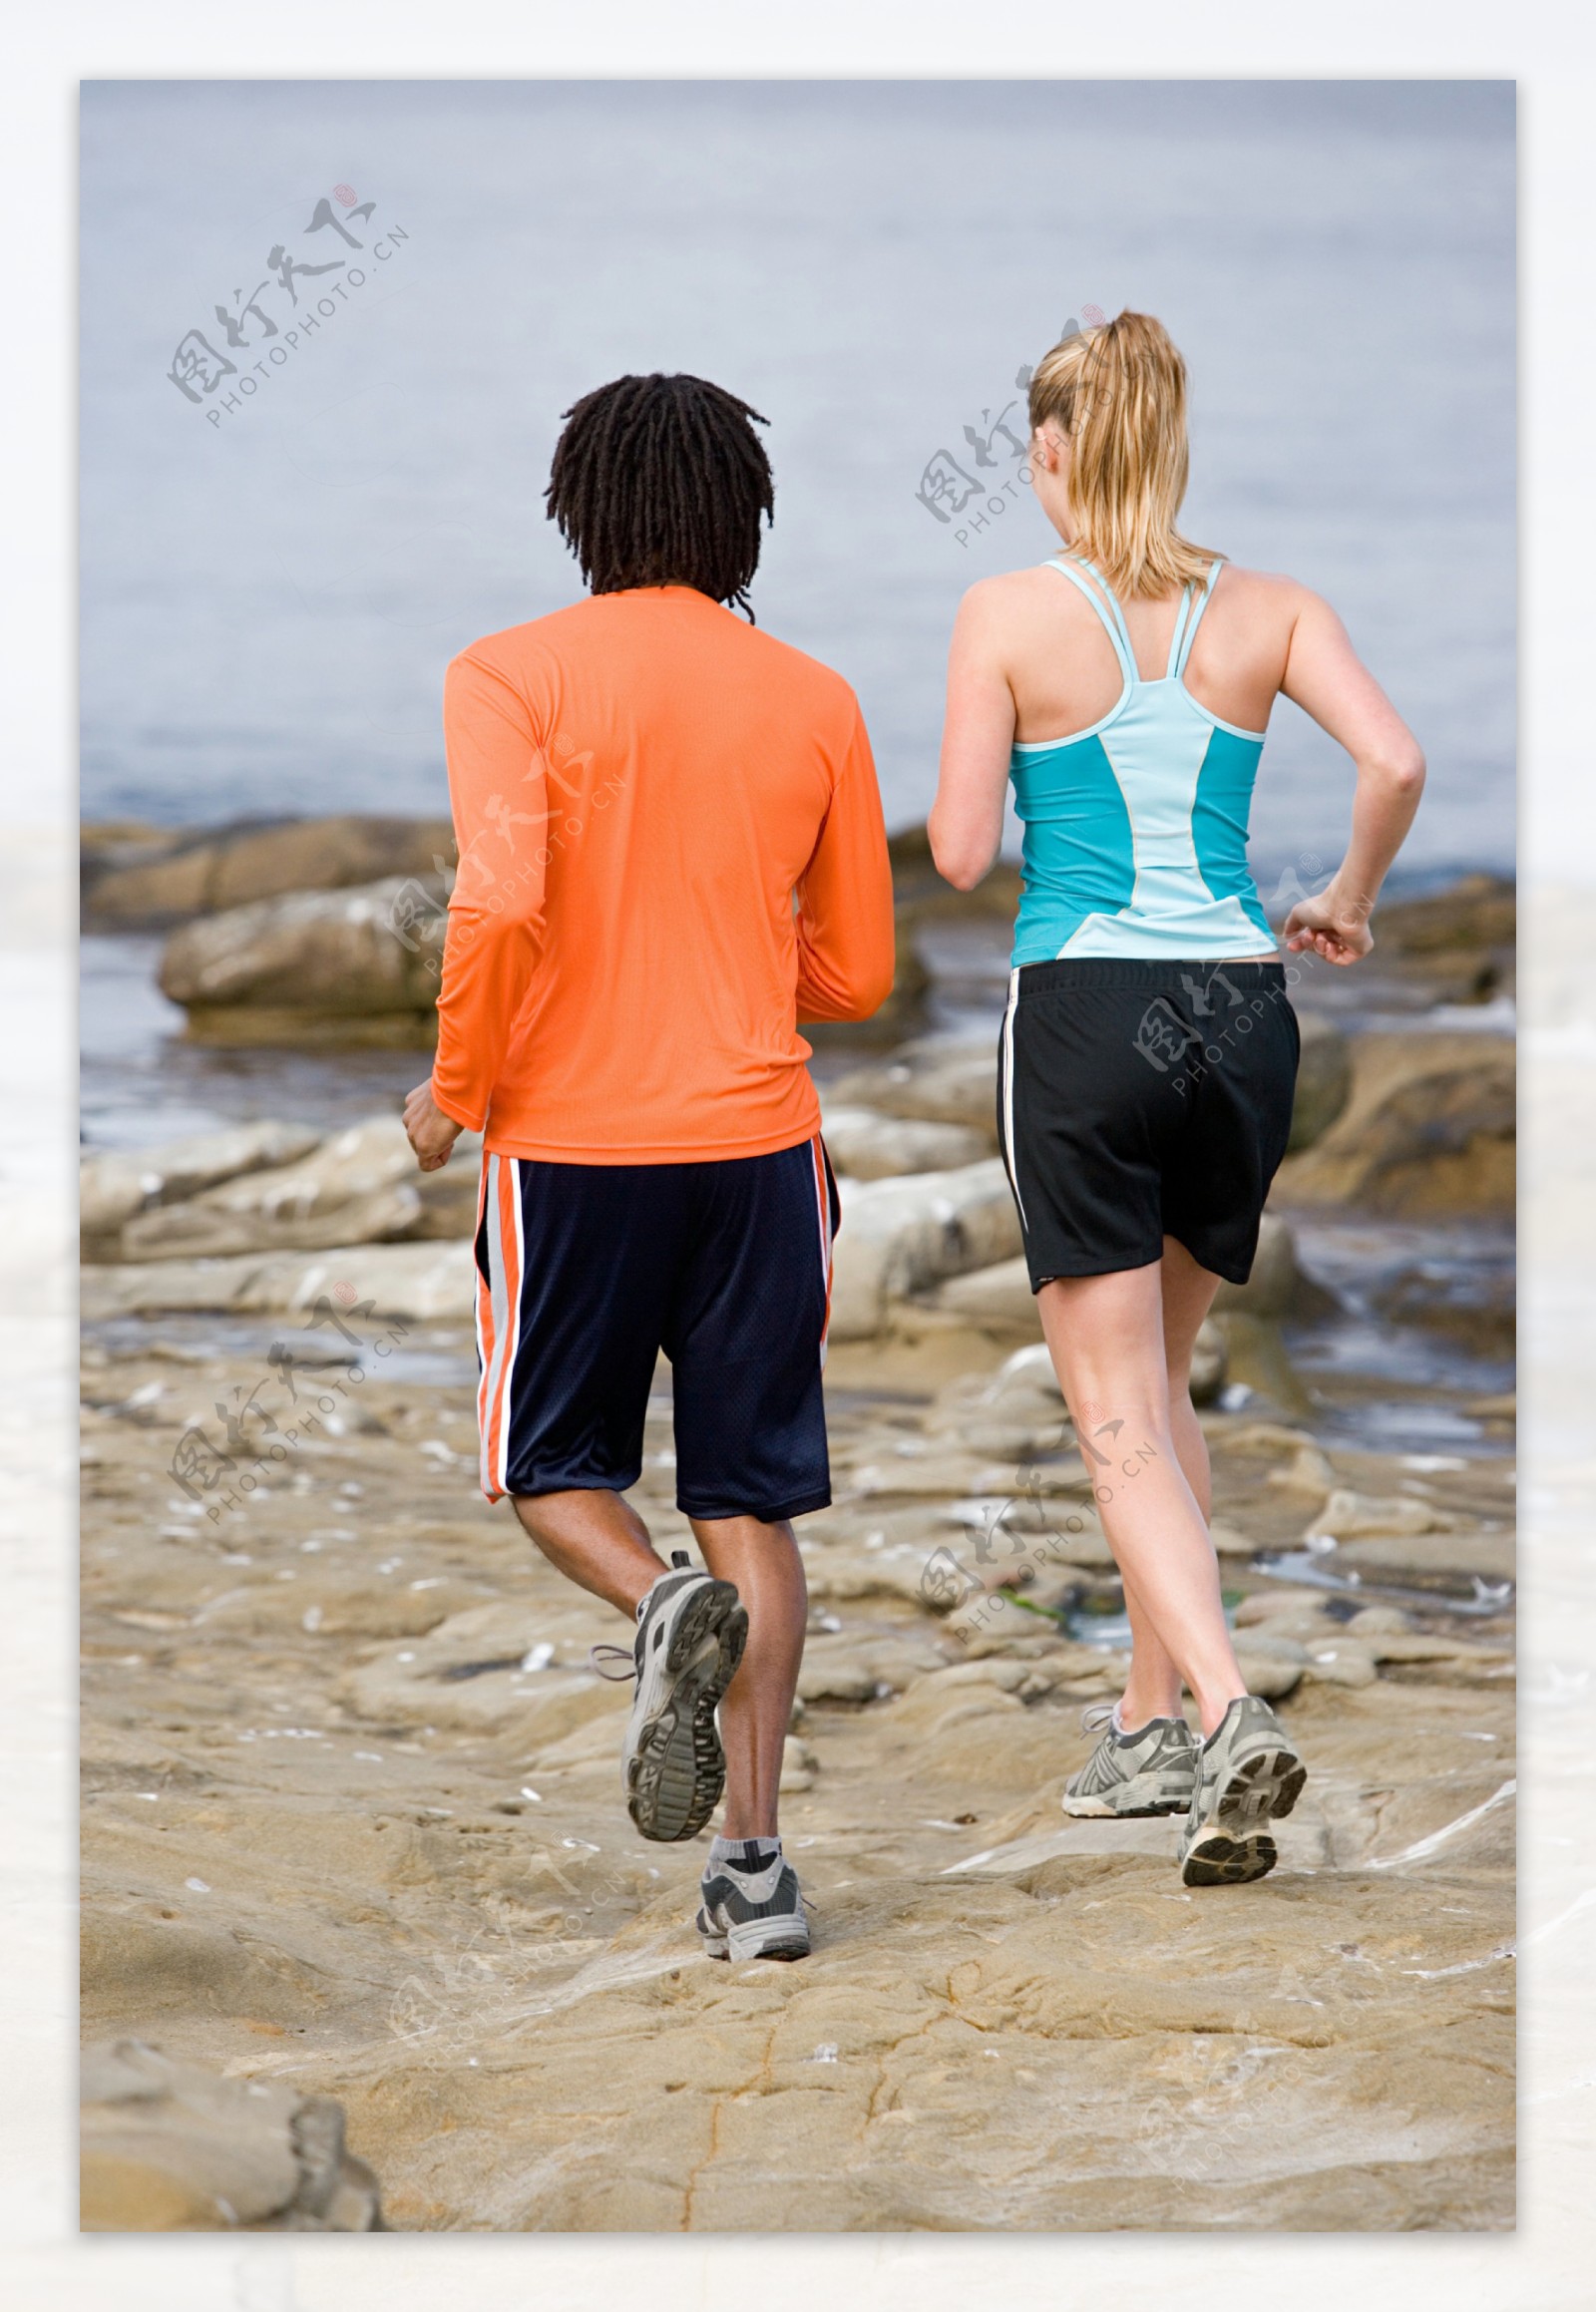 图片素材 : 海滩, 地平线, 轮廓, 日落, 早上, 赛跑, 男, 跑步, 转轮, 健康, 健身, 竞争, 适合, 耐力, 运动员, 慢跑 ...